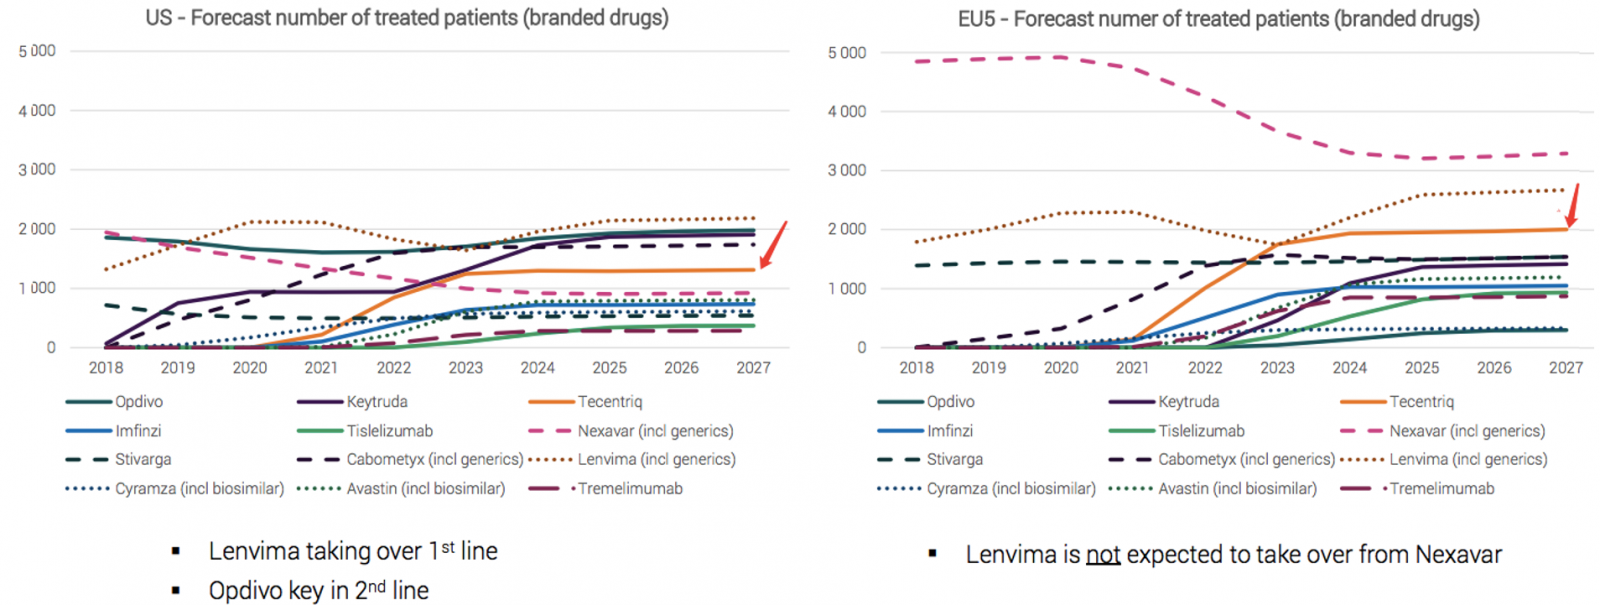 肝癌药物未来5年市场规模将翻倍增长